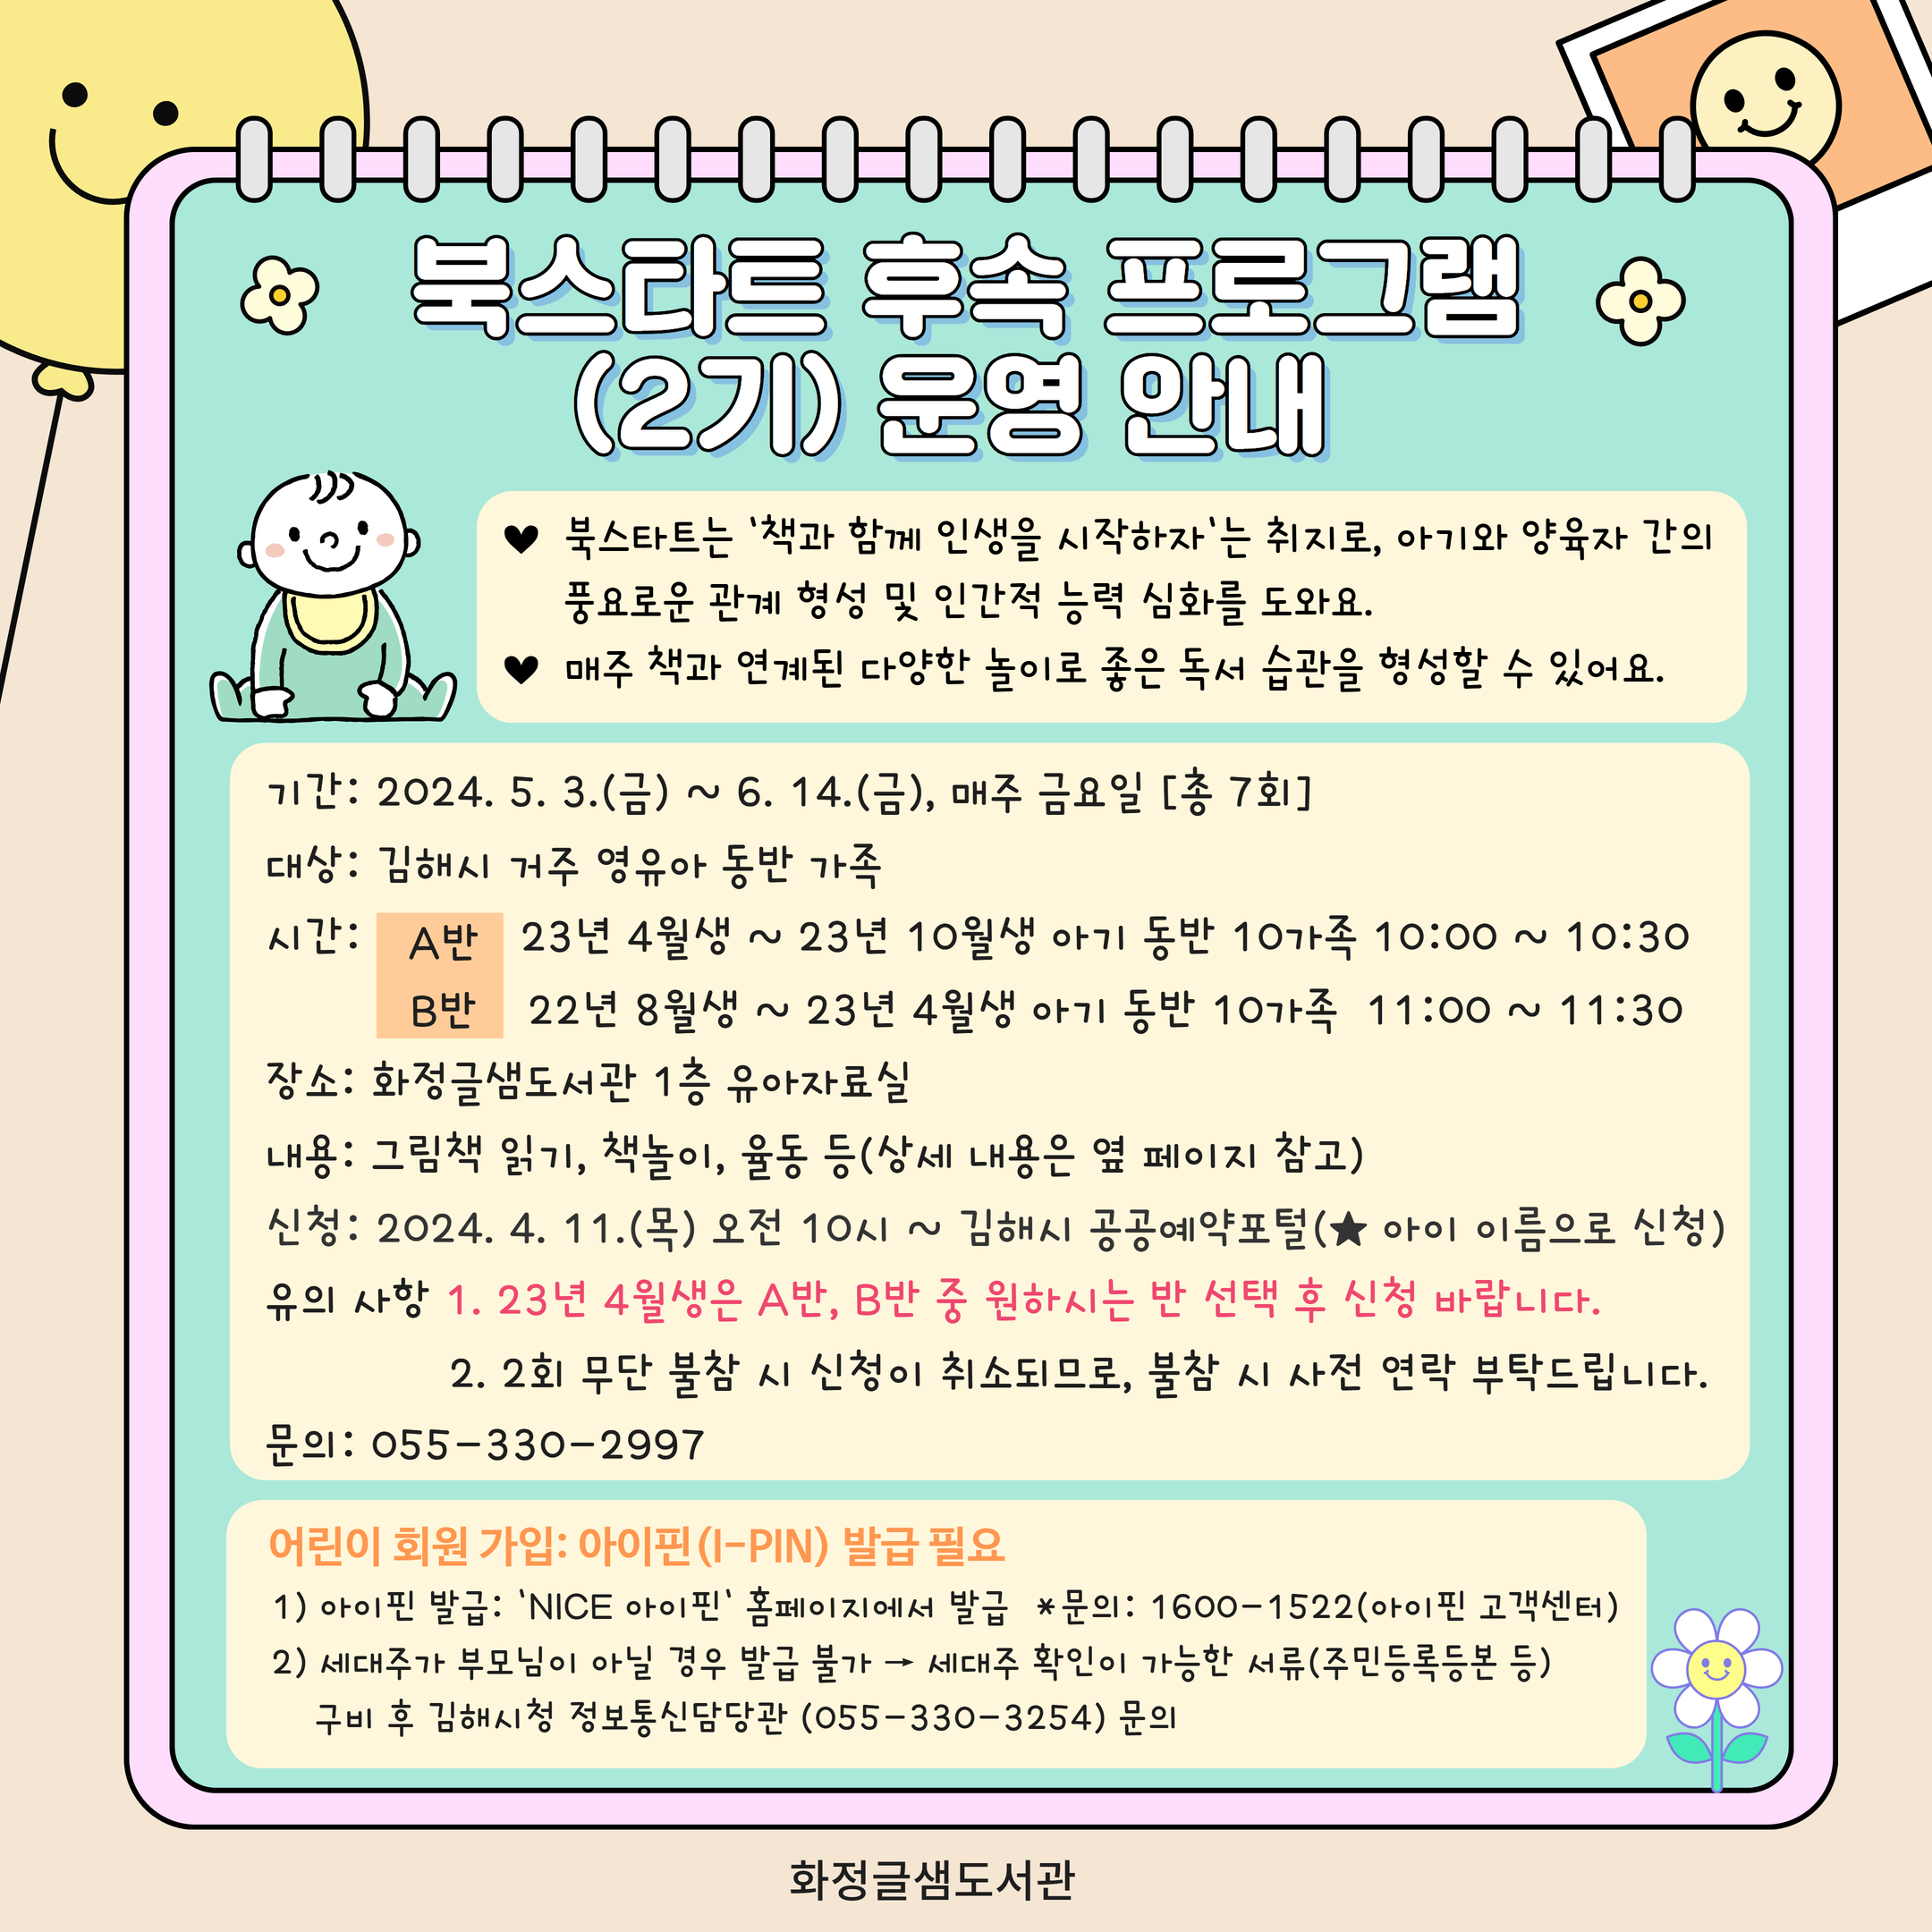 북스타트 2기 홍보문 1.png